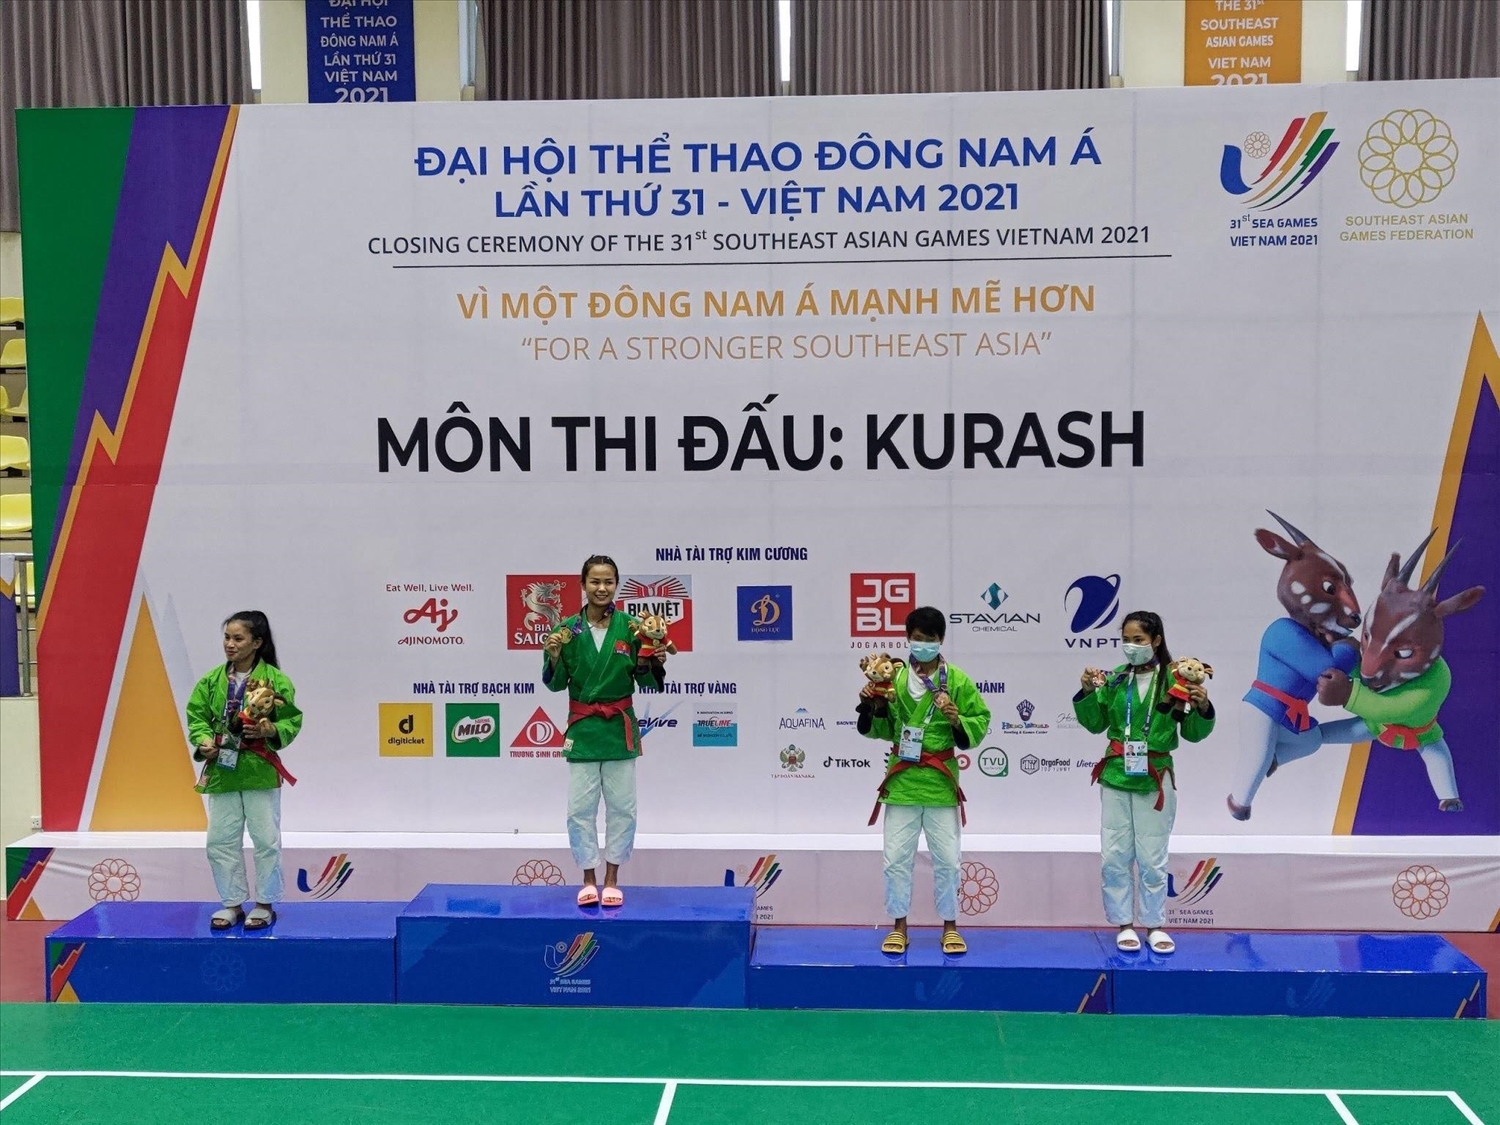 Nữ võ sĩ Tô Thị Trang đã mang về tấm Huy chương Vàng đầu tiên cho Đoàn Thể thao Việt Nam tại SEA Games 31 ở môn Kurash. (Ảnh BTC)